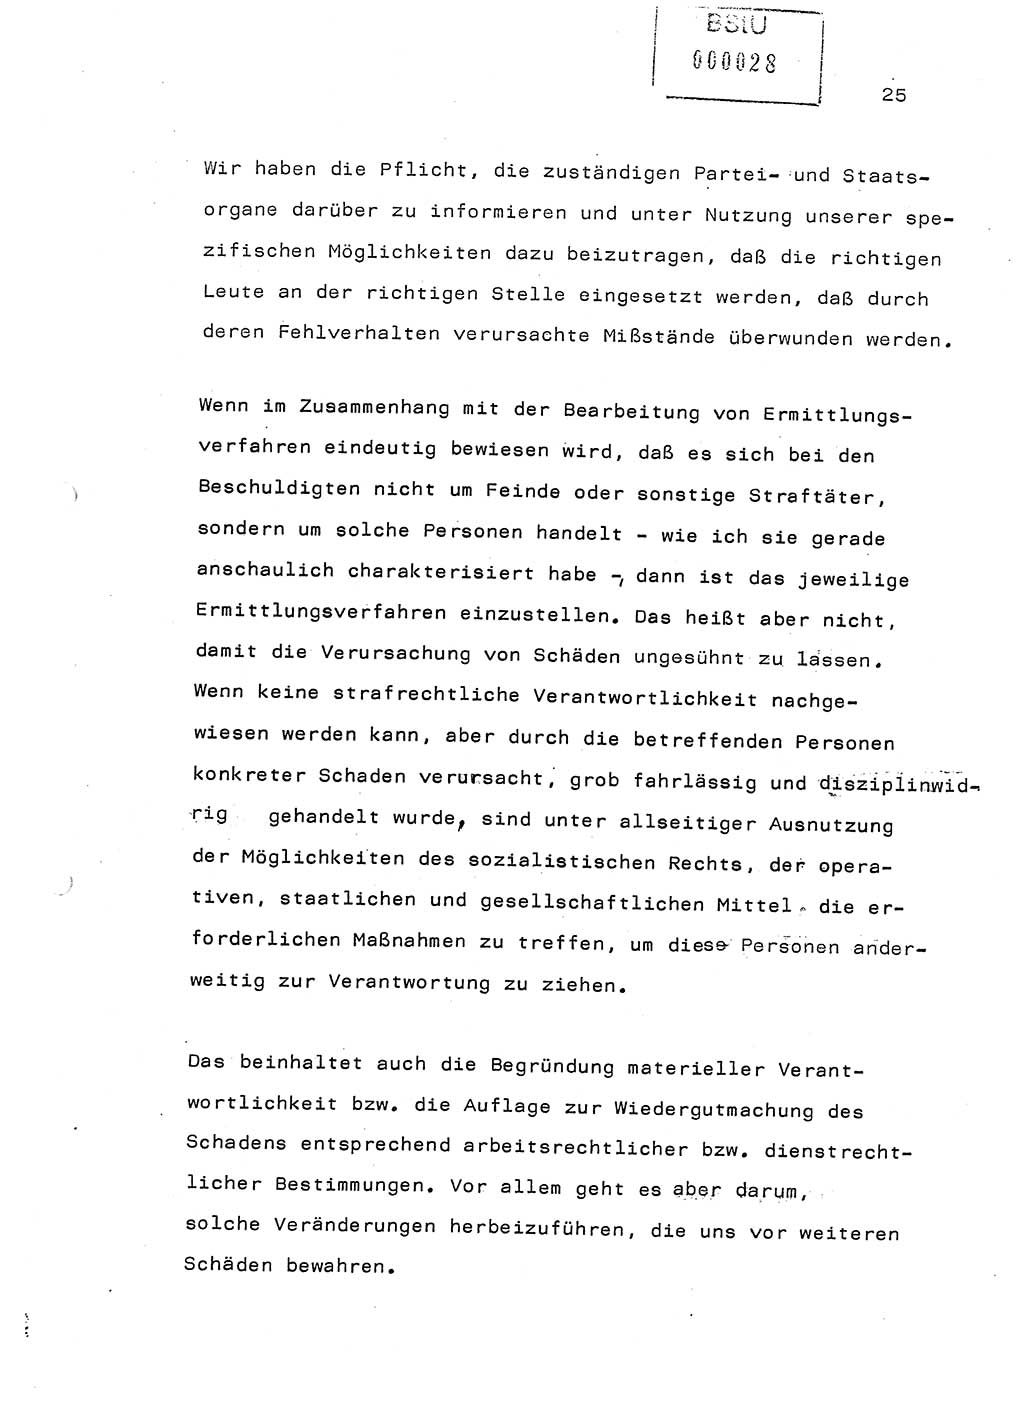 Referat (Generaloberst Erich Mielke) auf der Zentralen Dienstkonferenz am 24.5.1979 [Ministerium für Staatssicherheit (MfS), Deutsche Demokratische Republik (DDR), Der Minister], Berlin 1979, Seite 25 (Ref. DK DDR MfS Min. /79 1979, S. 25)